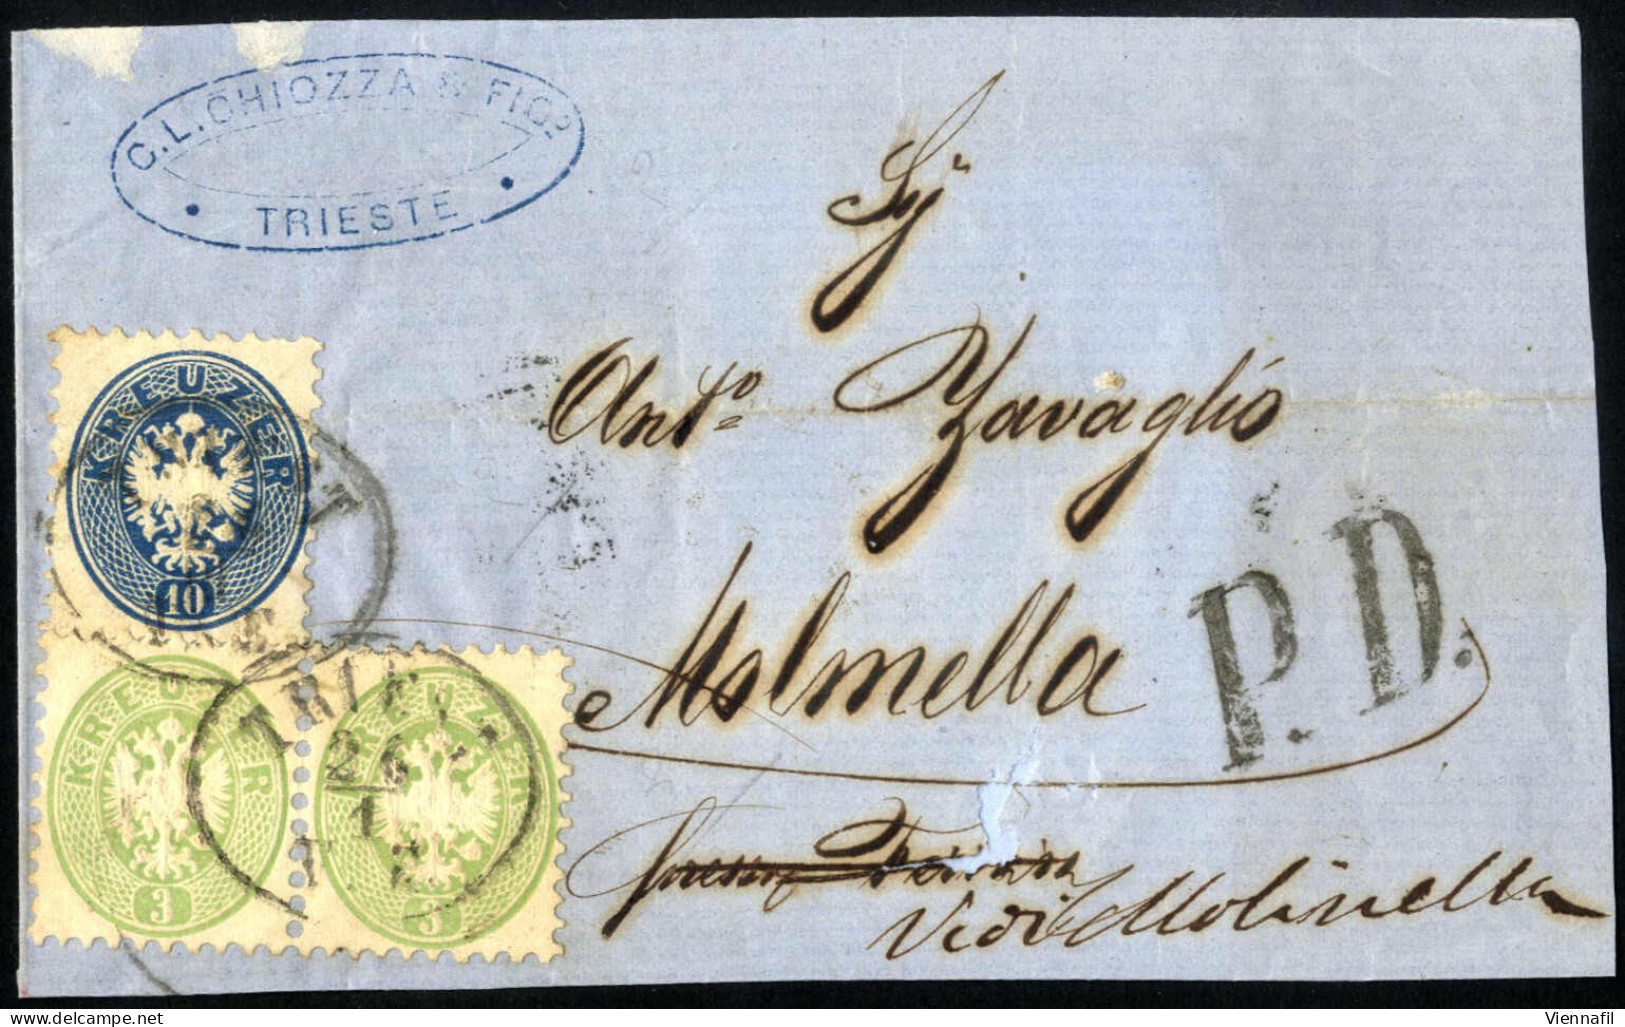 cover 1860/65, Brieflot mit neun Belegen, dabei ein Attest, Abbildungen siehe Onlinekatalog